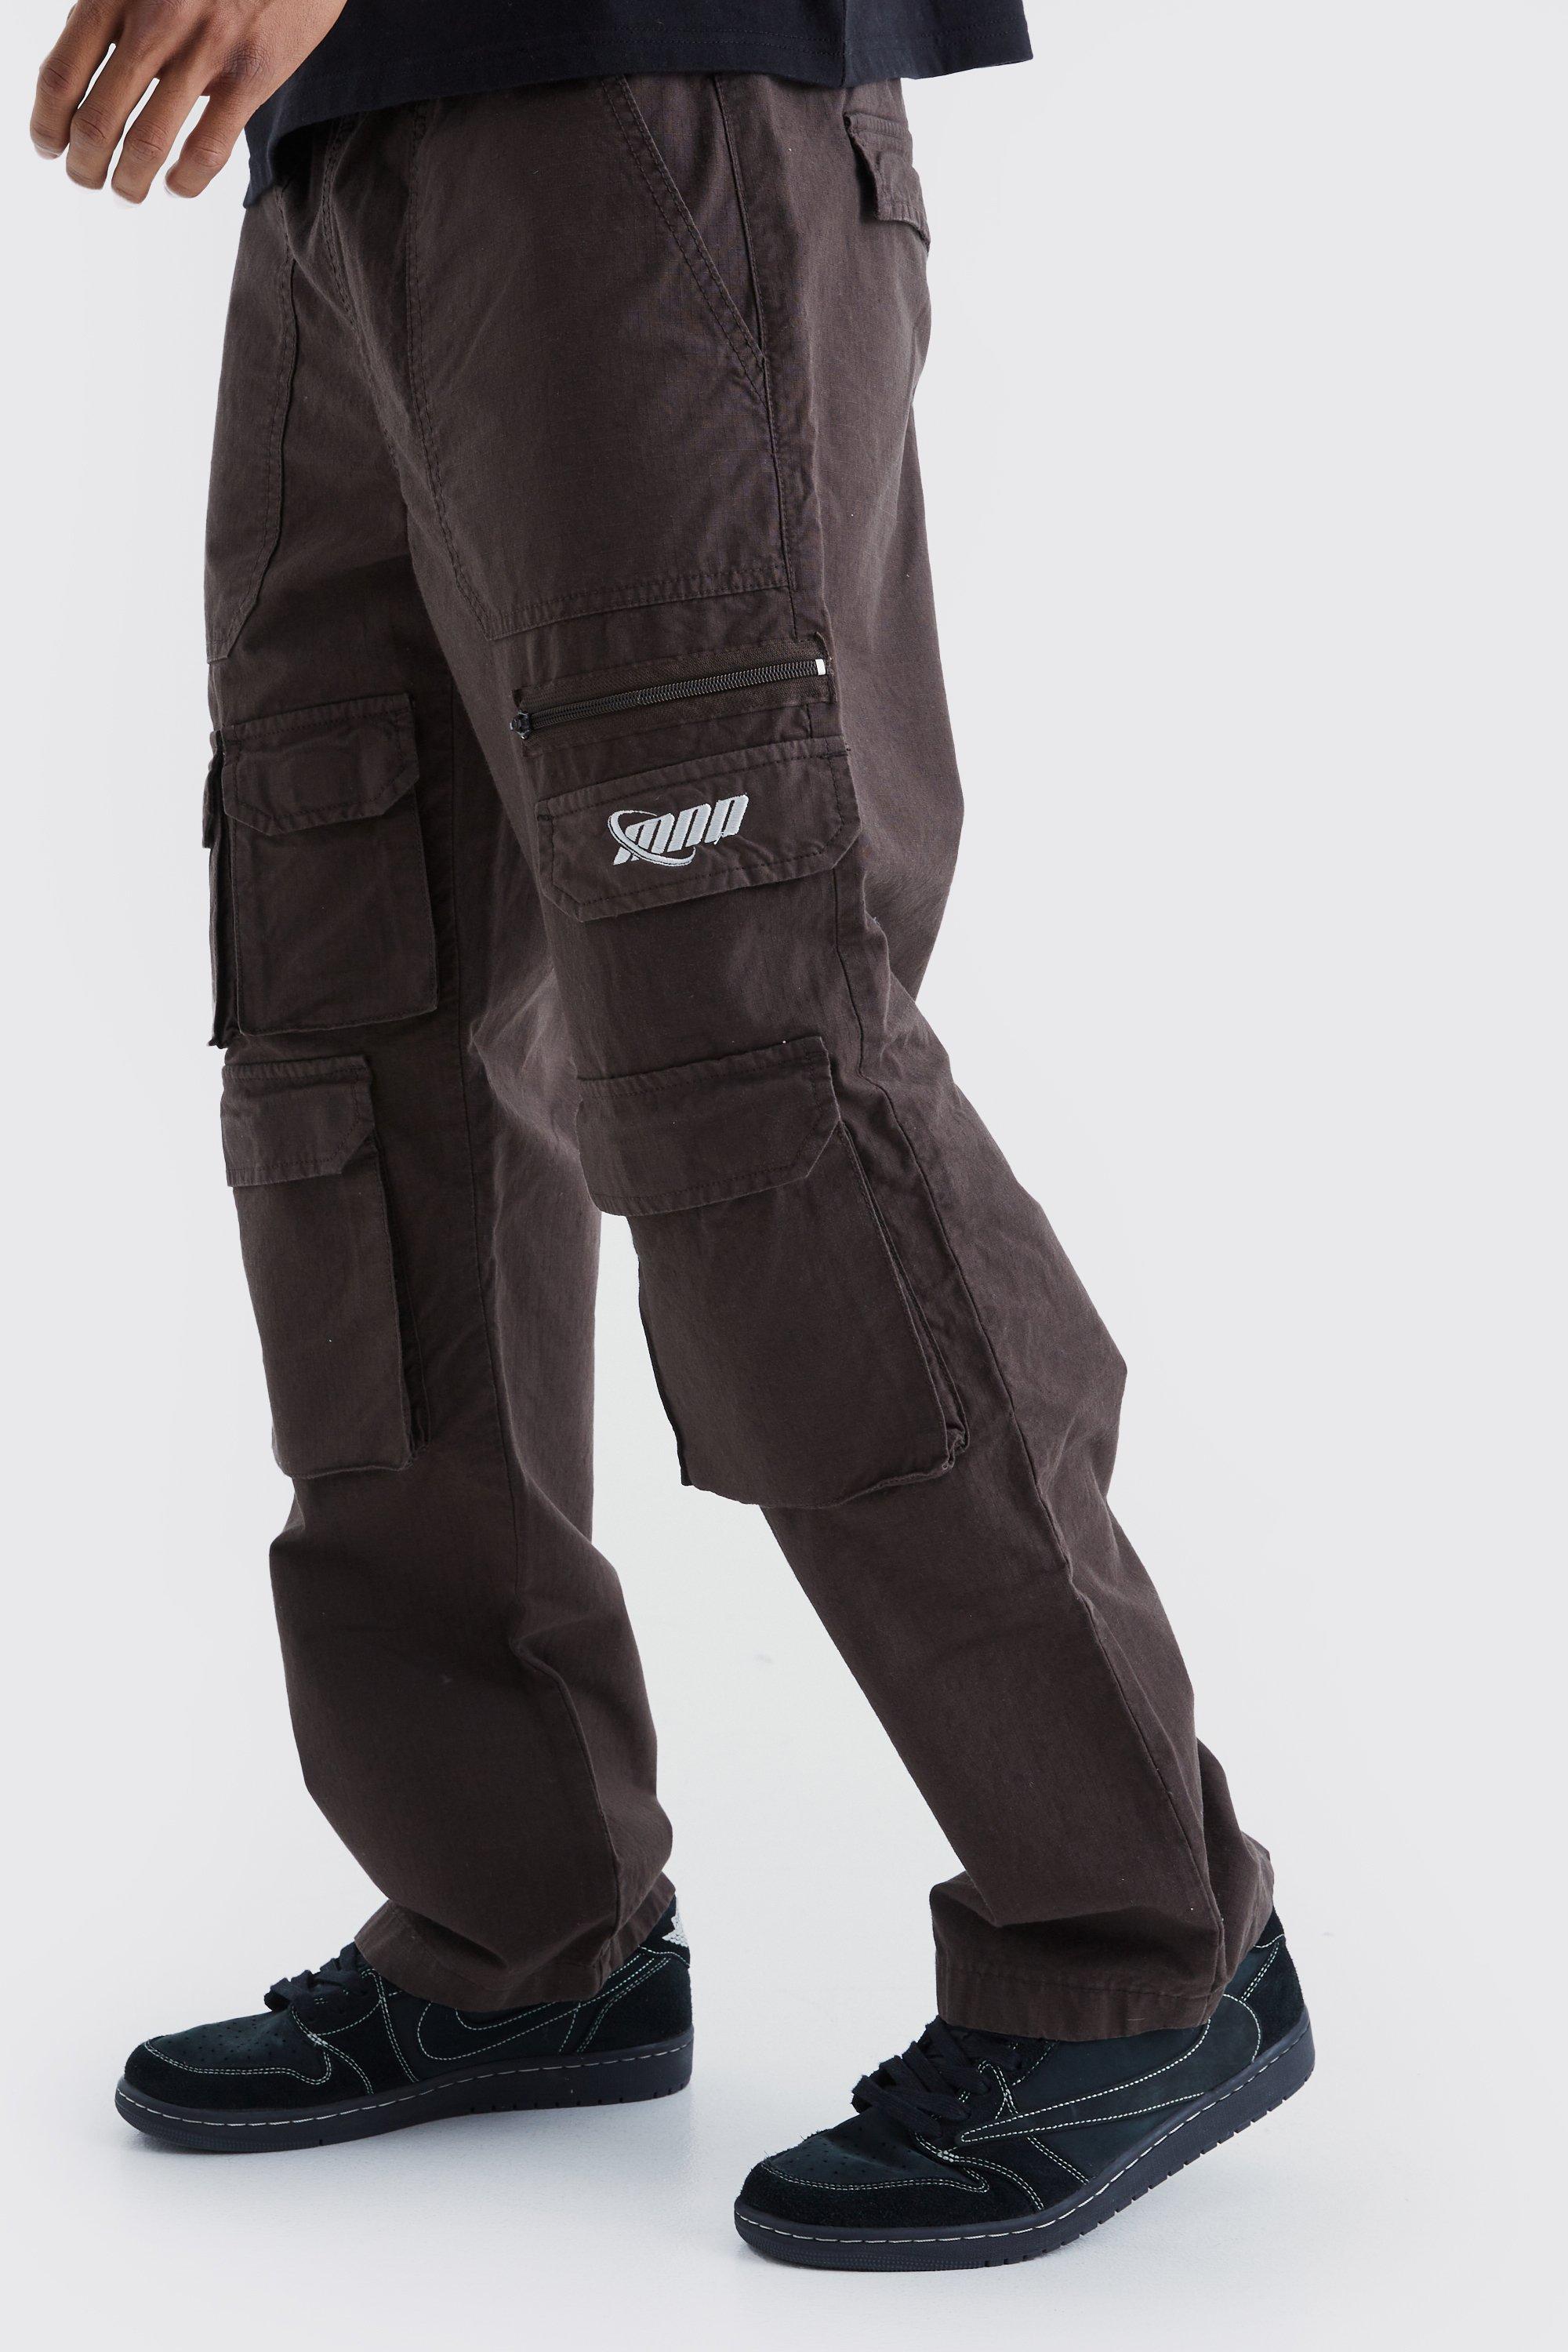 Image of Pantaloni Cargo rilassati in nylon ripstop con ricami tono su tono, Brown